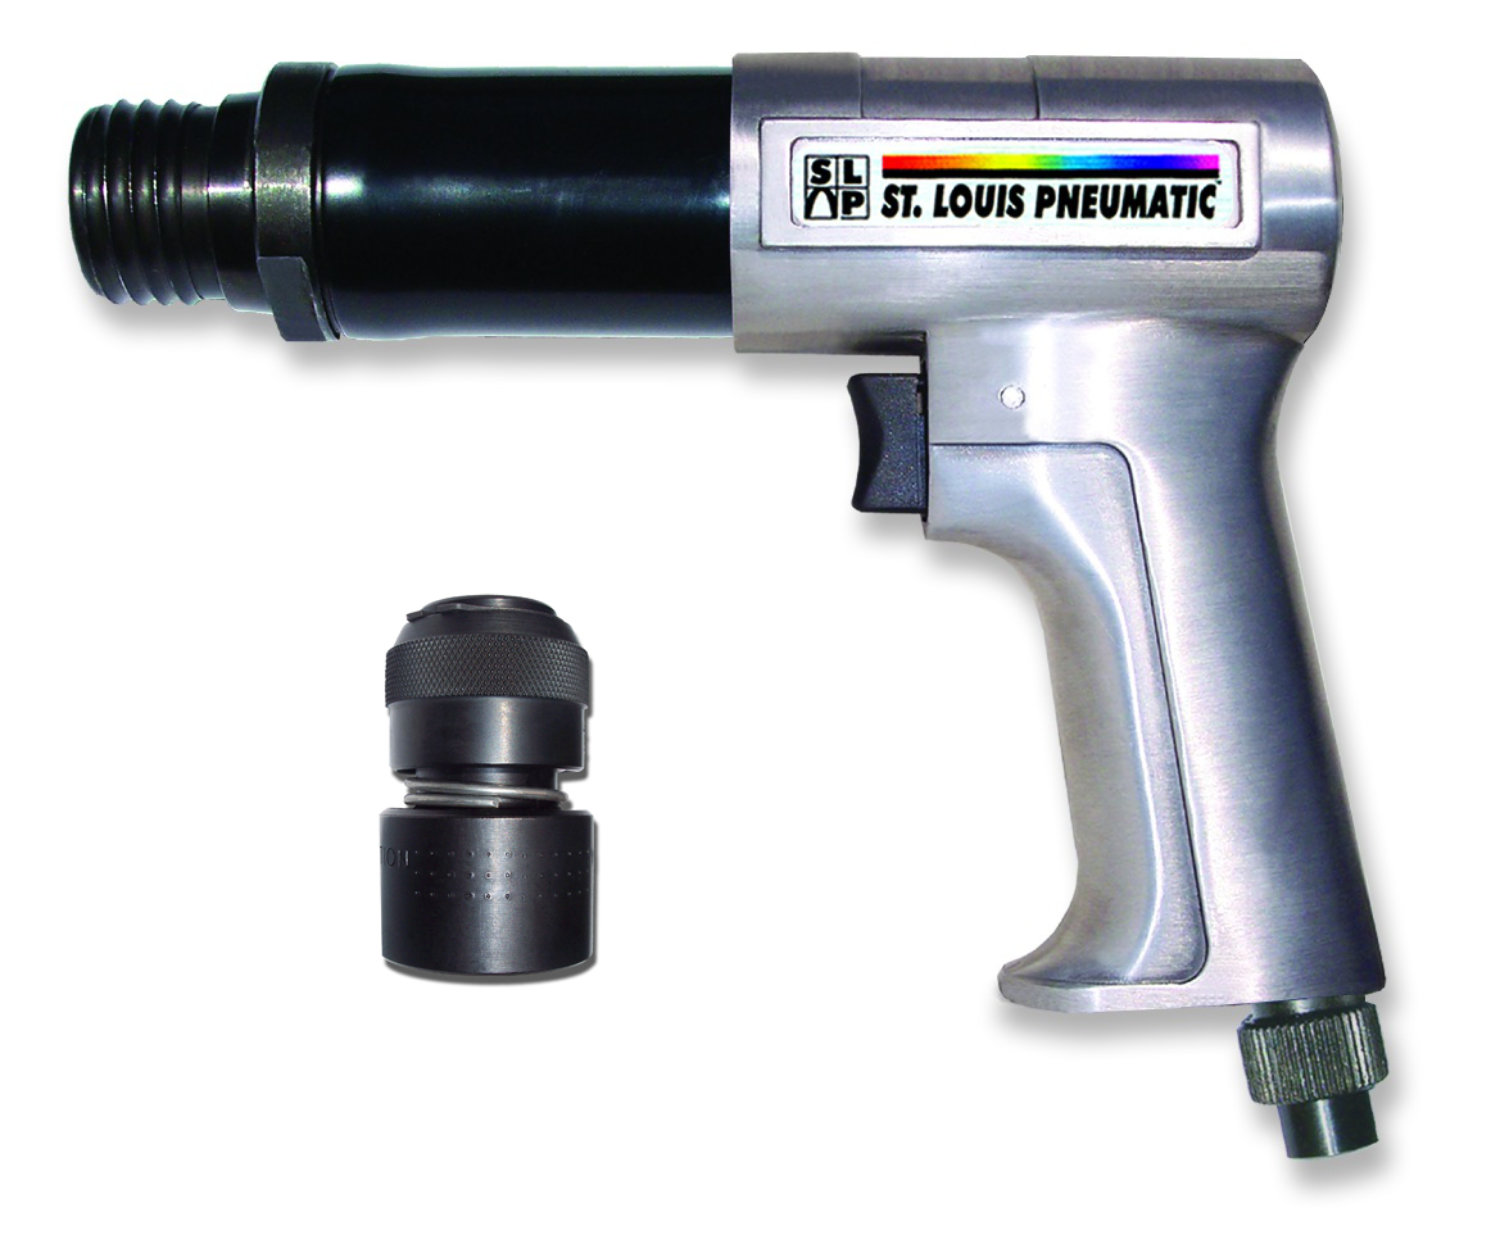 Heavy-Duty Medium Barrel Pneumatic Hammer Kit - Made in USA Tools